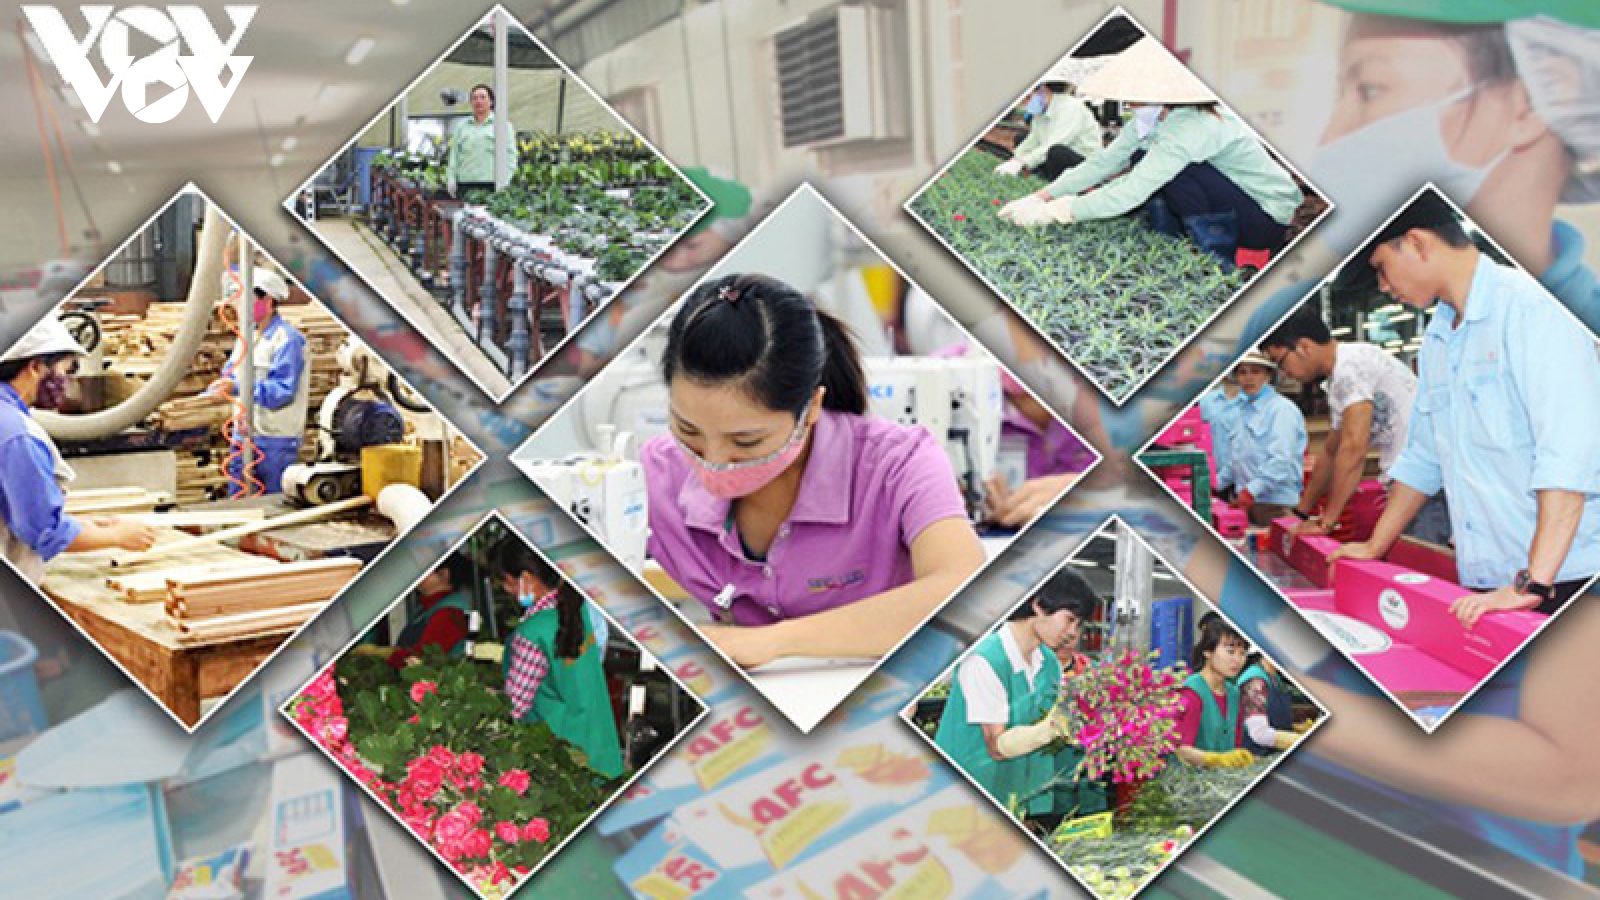 COVID-19 & Growth scenarios for Vietnam 